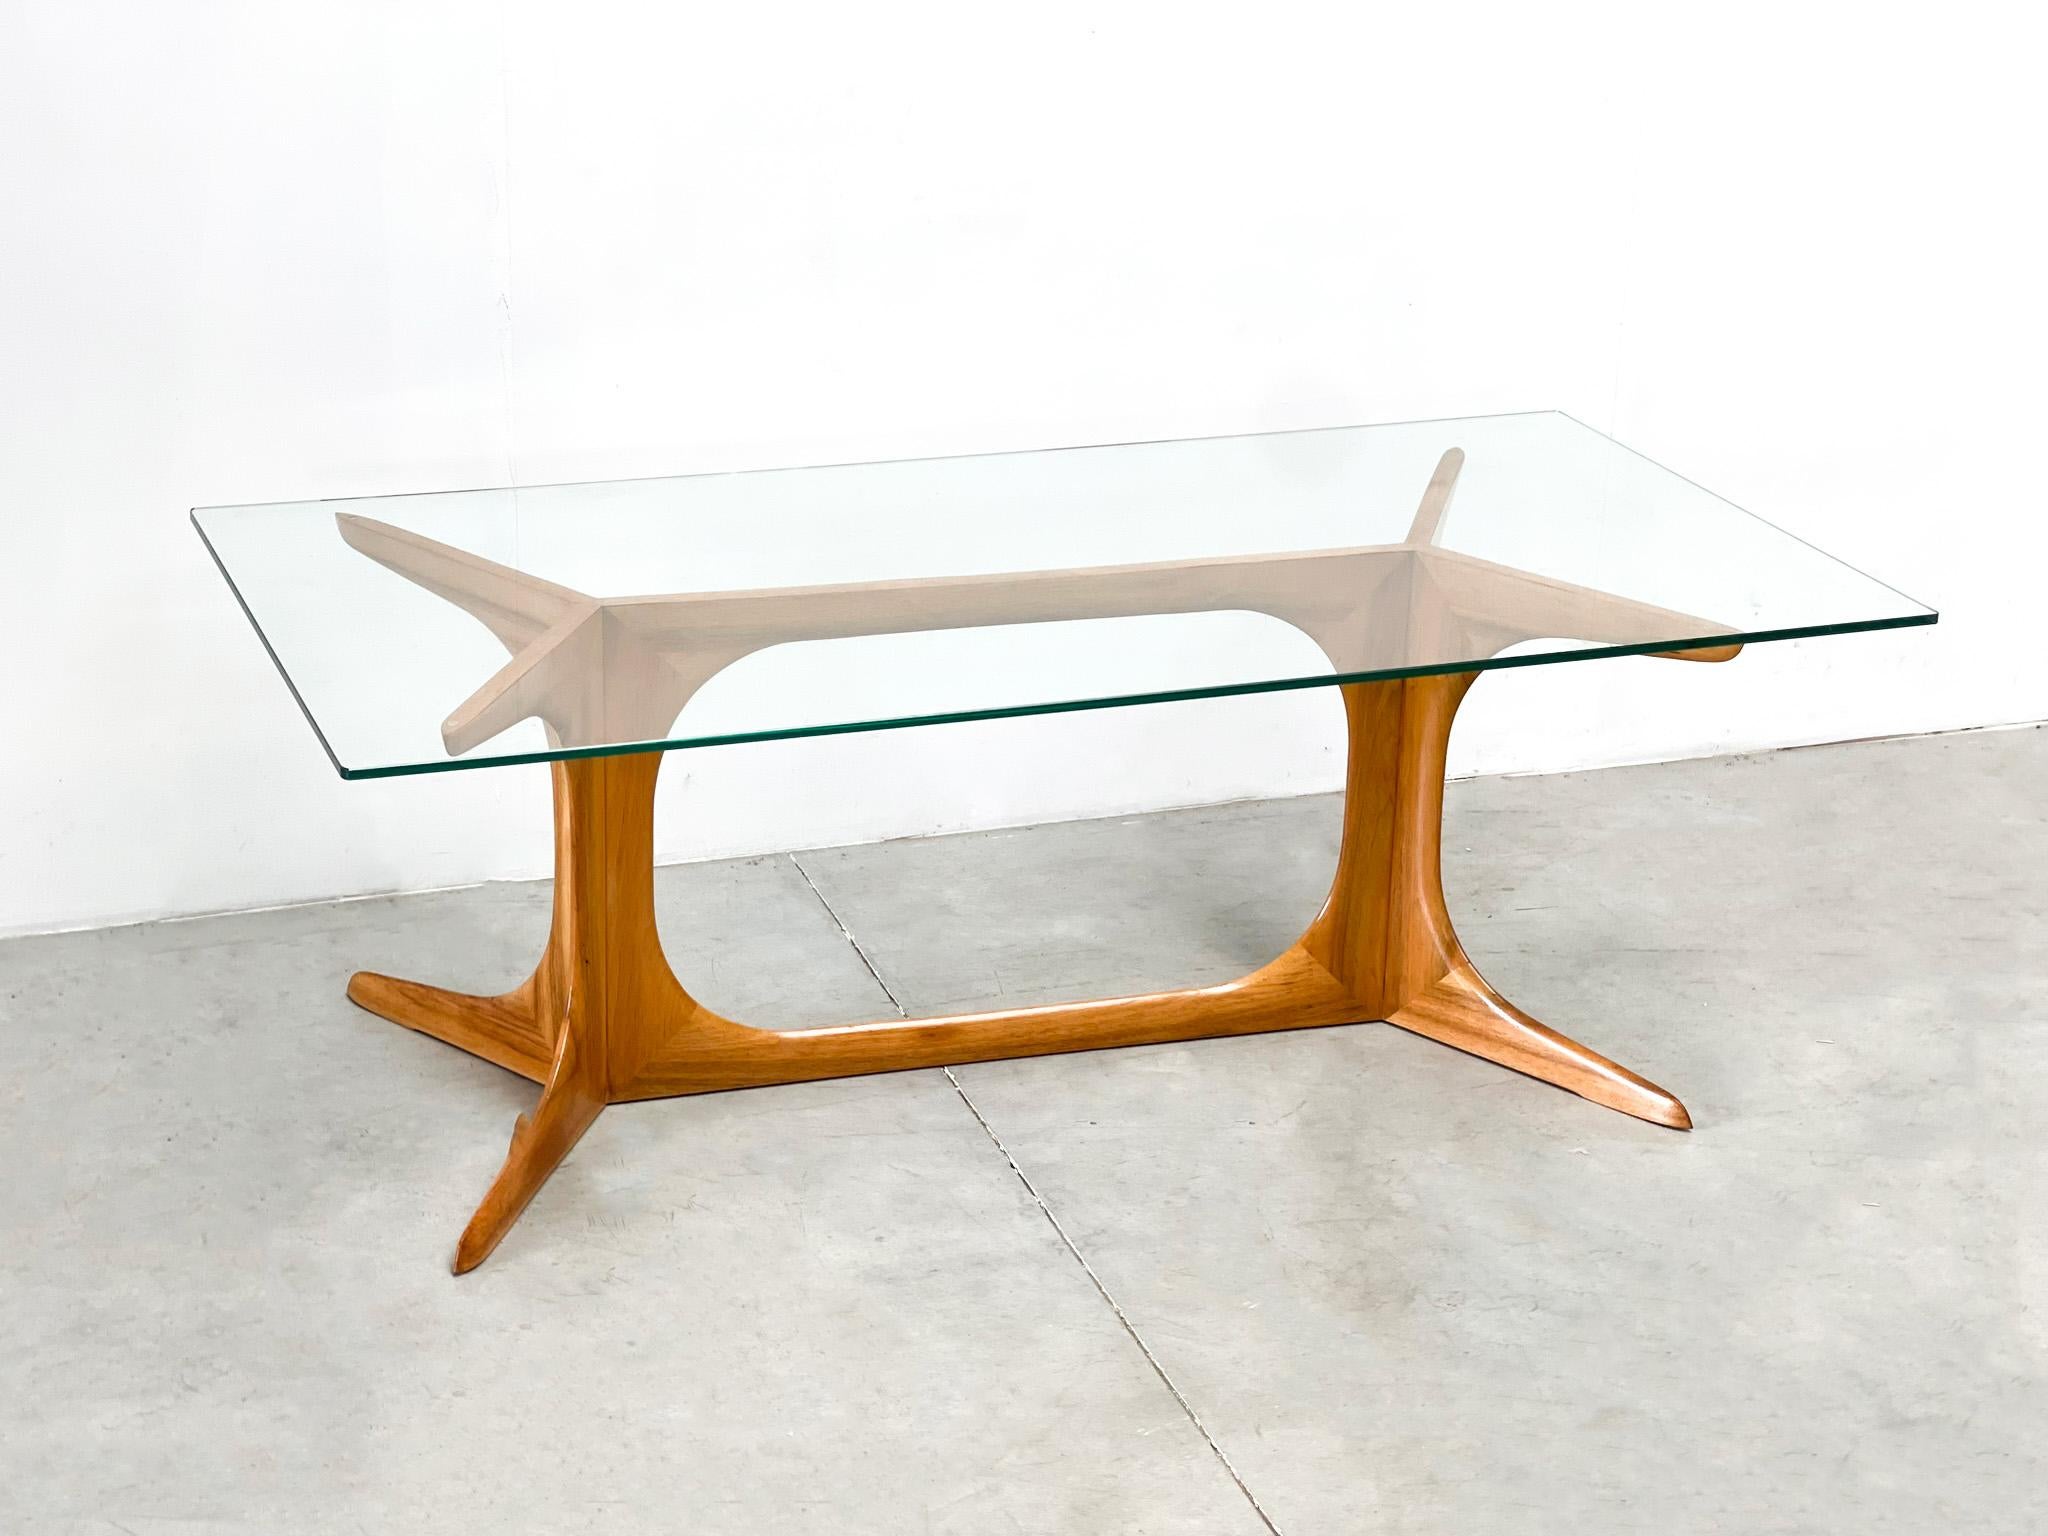 L'élégance italienne, voilà ce à quoi on pense en voyant cette table basse. Cette table basse est attribuée au célèbre designer italien Ico Parisi. Il s'agit d'un exemple clair de l'élégance italienne et d'un design de haut niveau. Un bon exemple de